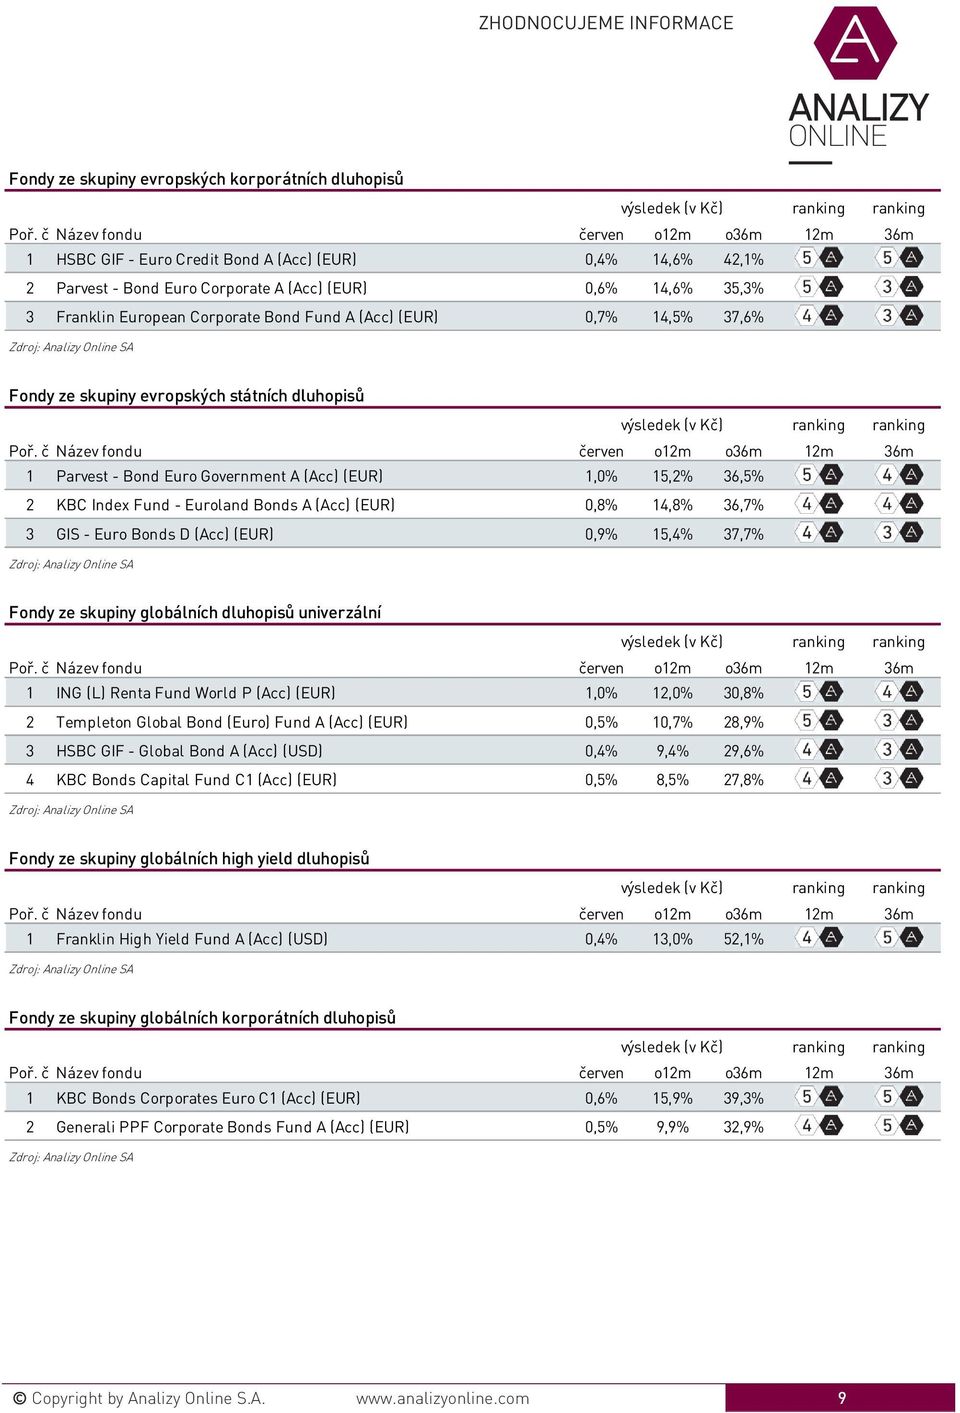 (Acc) (EUR) 0,8% 14,8% 36,7% 3 GIS - Euro Bonds D (Acc) (EUR) 0,9% 15,4% 37,7% Fondy ze skupiny globálních dluhopisů univerzální 1 ING (L) Renta Fund World P (Acc) (EUR) 1,0% 12,0% 30,8% 2 Templeton